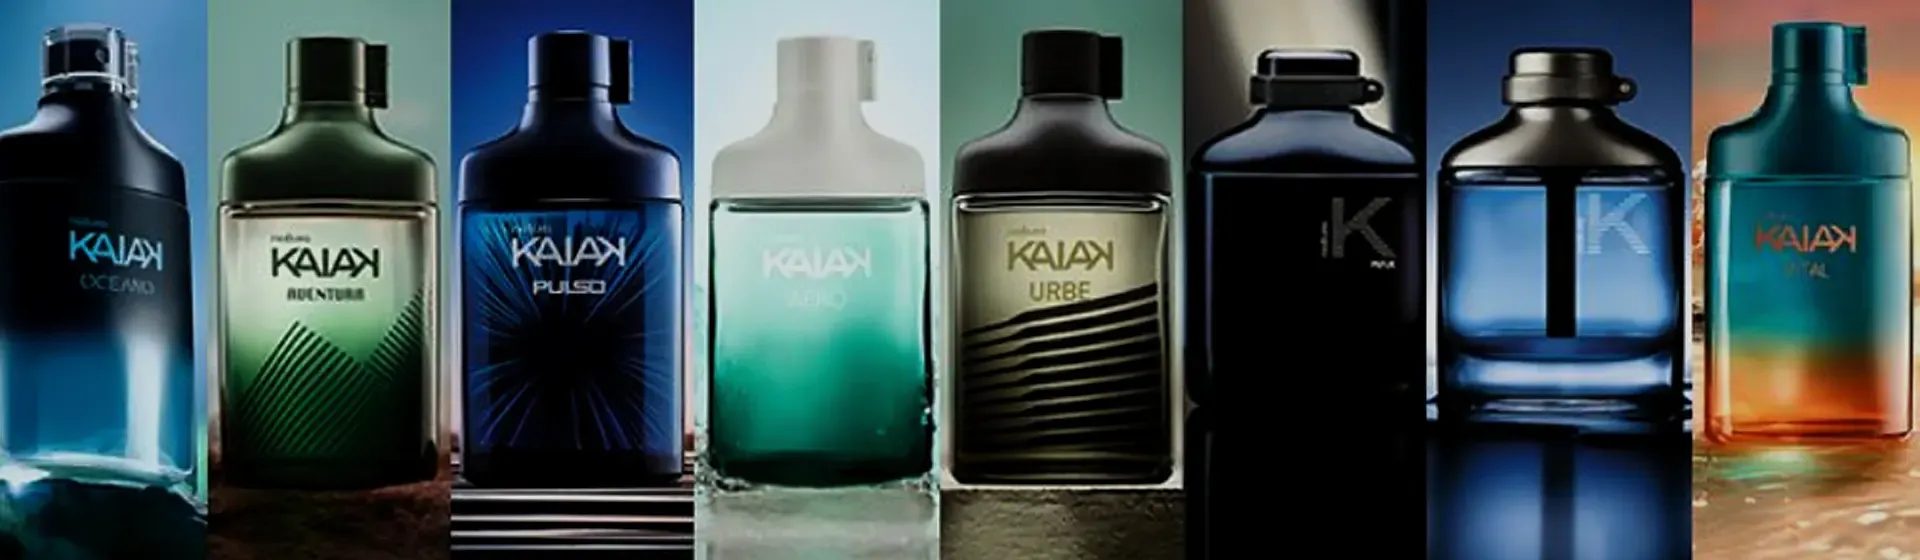 Capa do post: Kaiak Perfume: 6 melhores opções de fragrâncias masculinas da linha